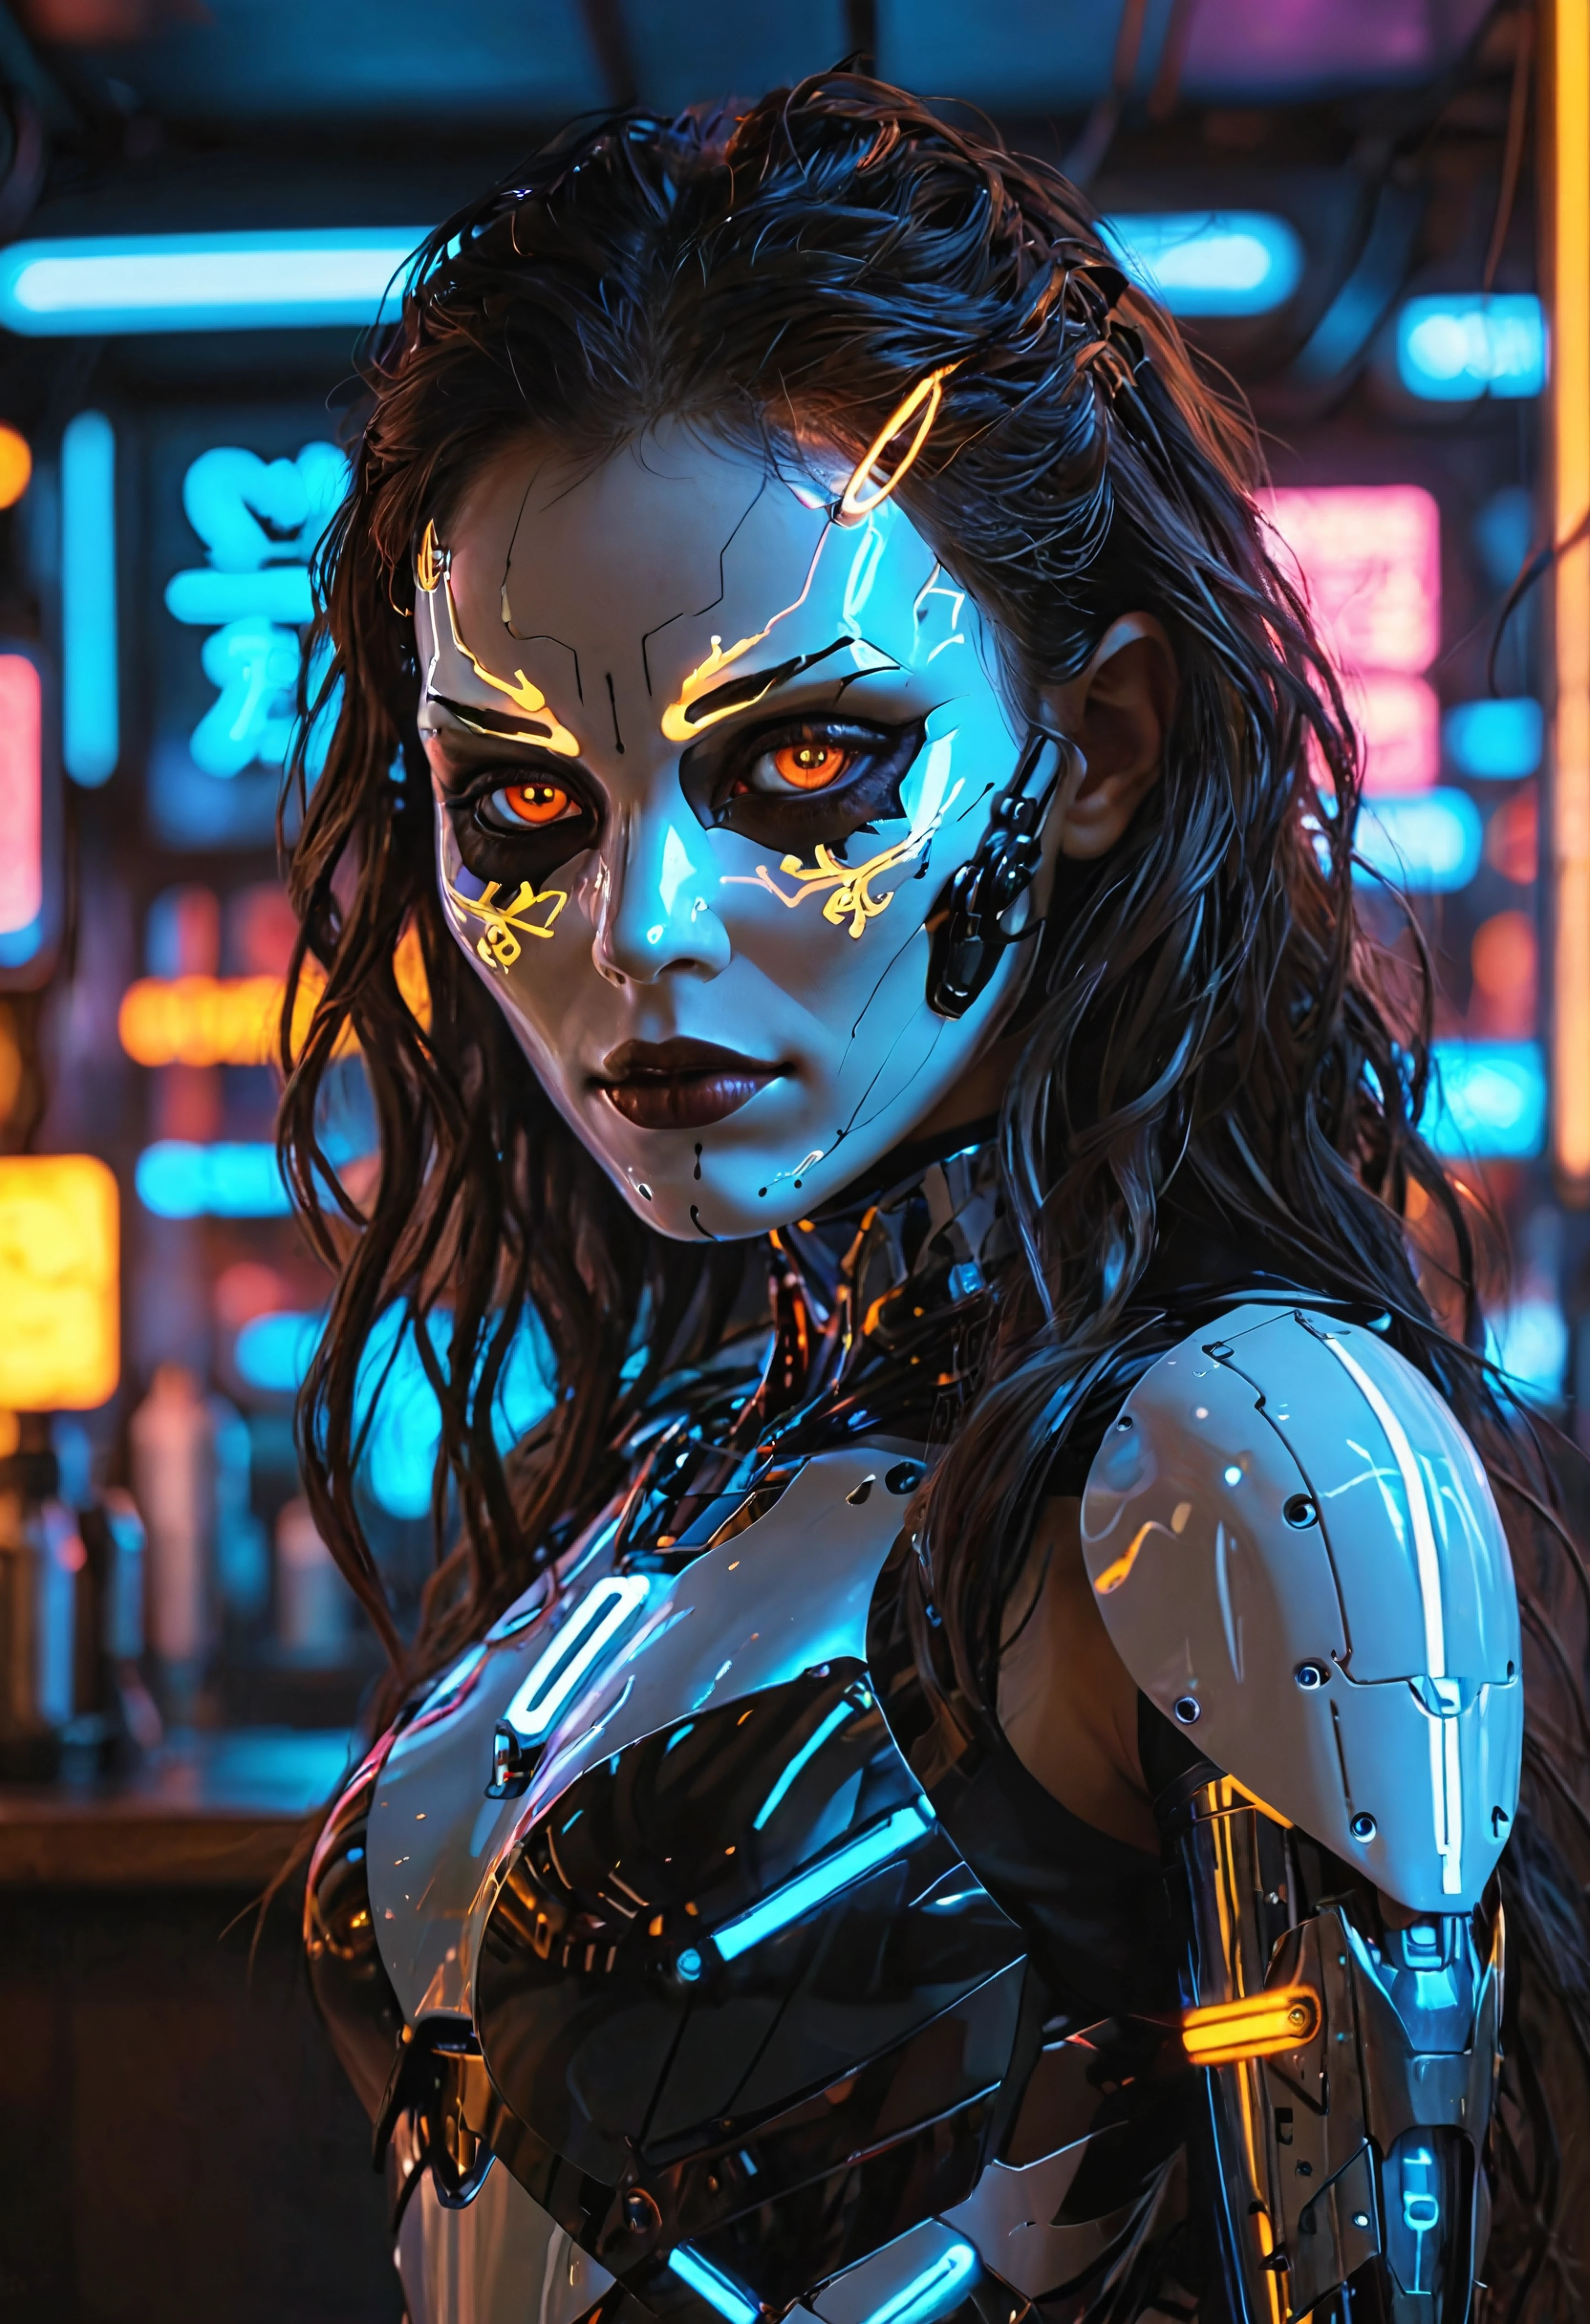 Cybercore-Ästhetik, Bar mit dunklen Neonlichtern, cyborg woman, glühende Augen, Maske, Dunkelbraune lange Haare, Betrachter betrachten, volumetrisch, kompliziert, durchdacht, ausführlich, RAL-LED-Leuchten, 